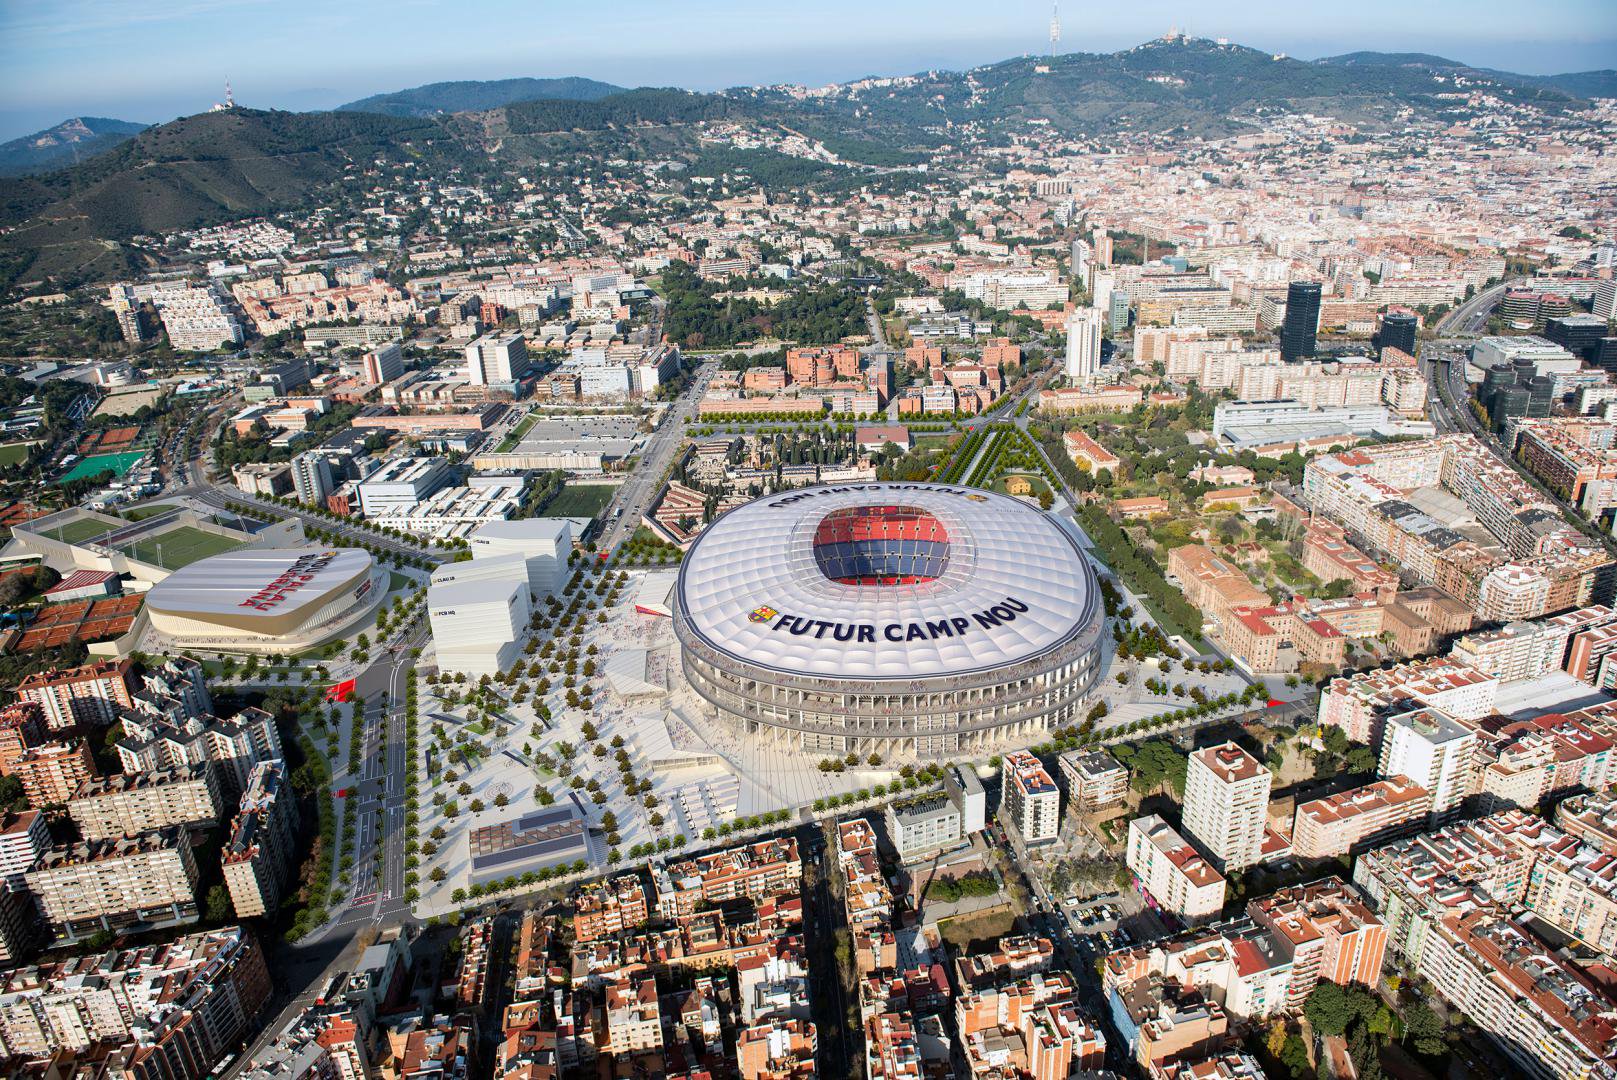 El nuevo Camp Nou tendrá nidos artificiales para proteger a los pájaros de Barcelona